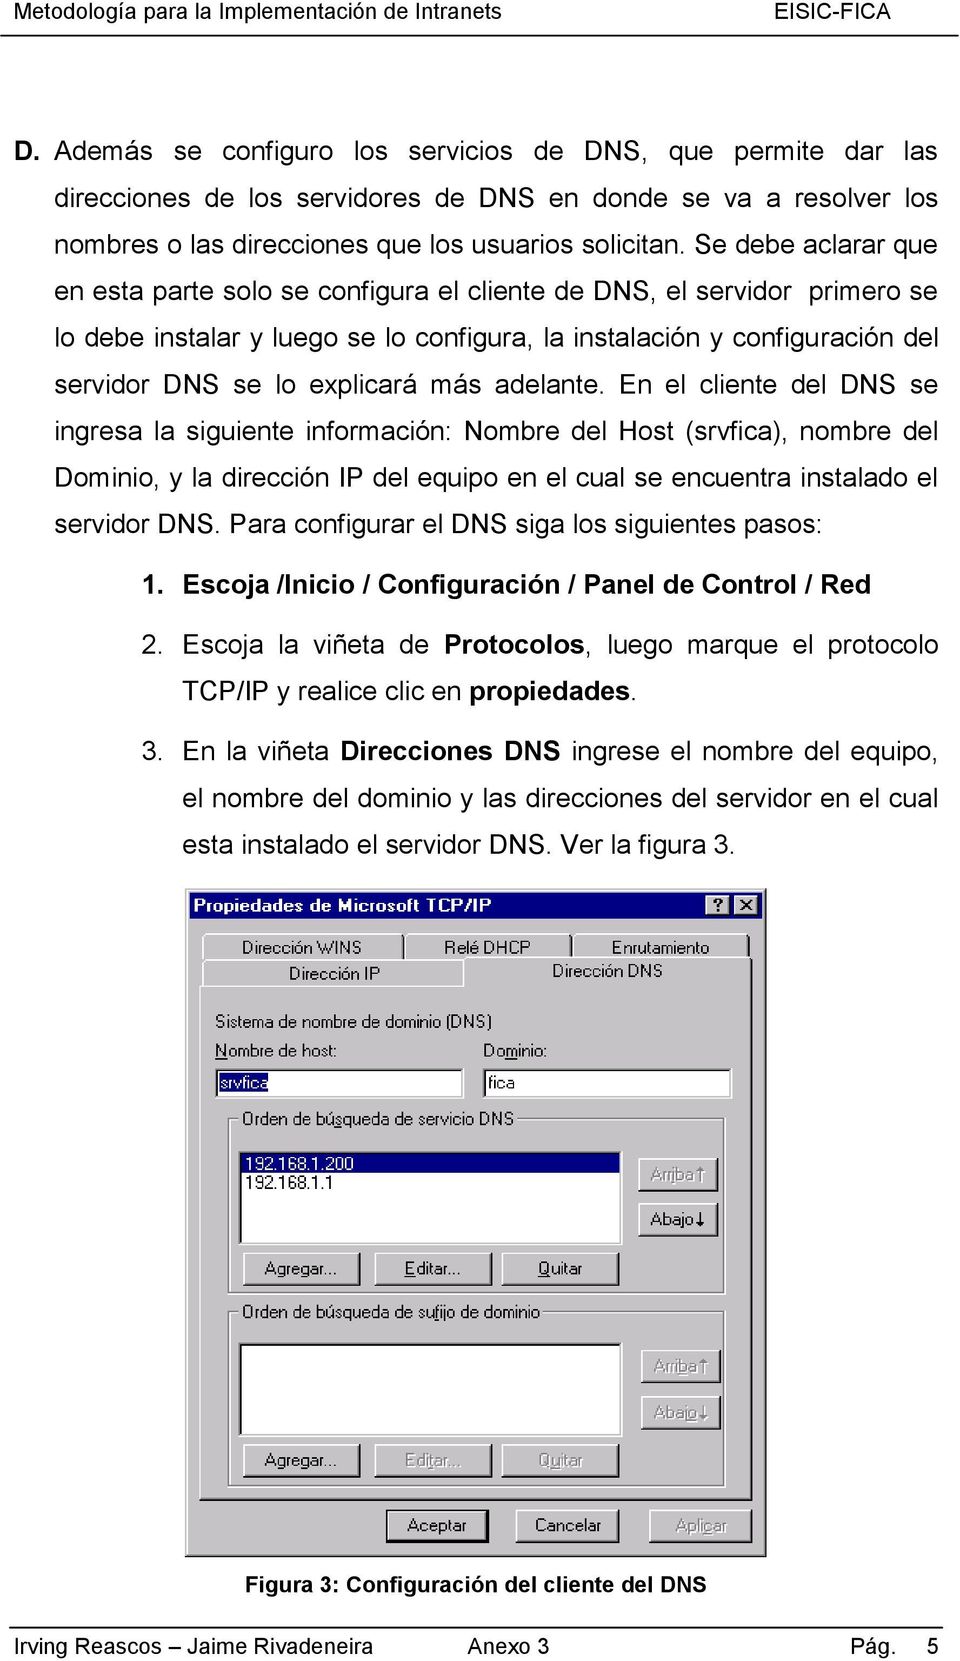 más adelante. En el cliente del DNS se ingresa la siguiente información: Nombre del Host (srvfica), nombre del Dominio, y la dirección IP del equipo en el cual se encuentra instalado el servidor DNS.